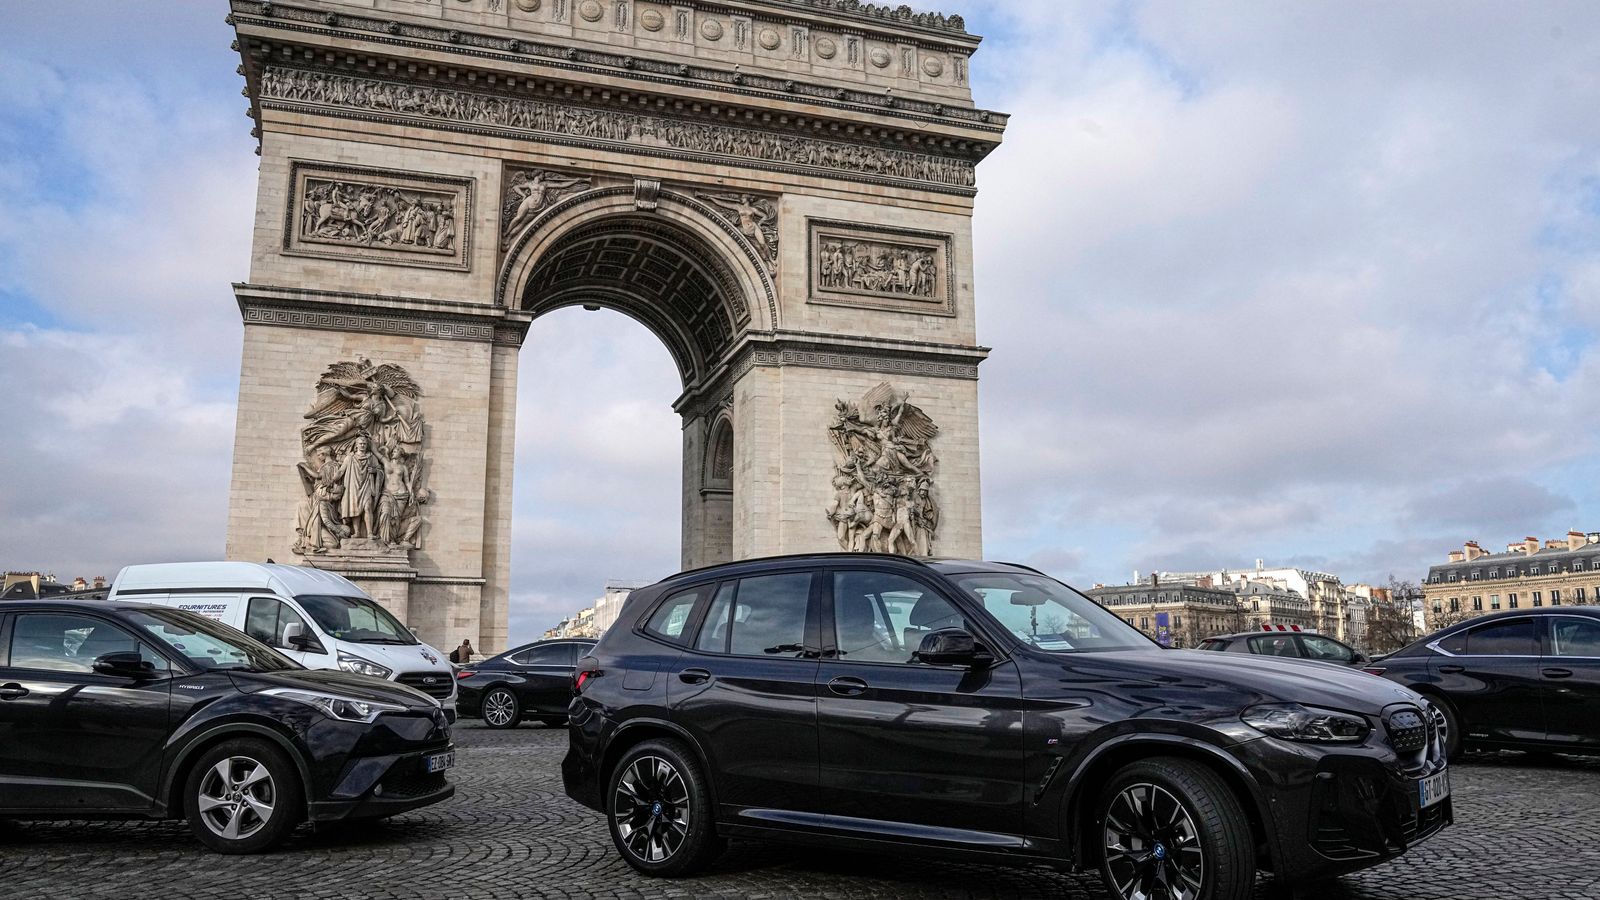 パリ、一部のSUVの駐車料金を2倍にする法案を可決 | 世界のニュース